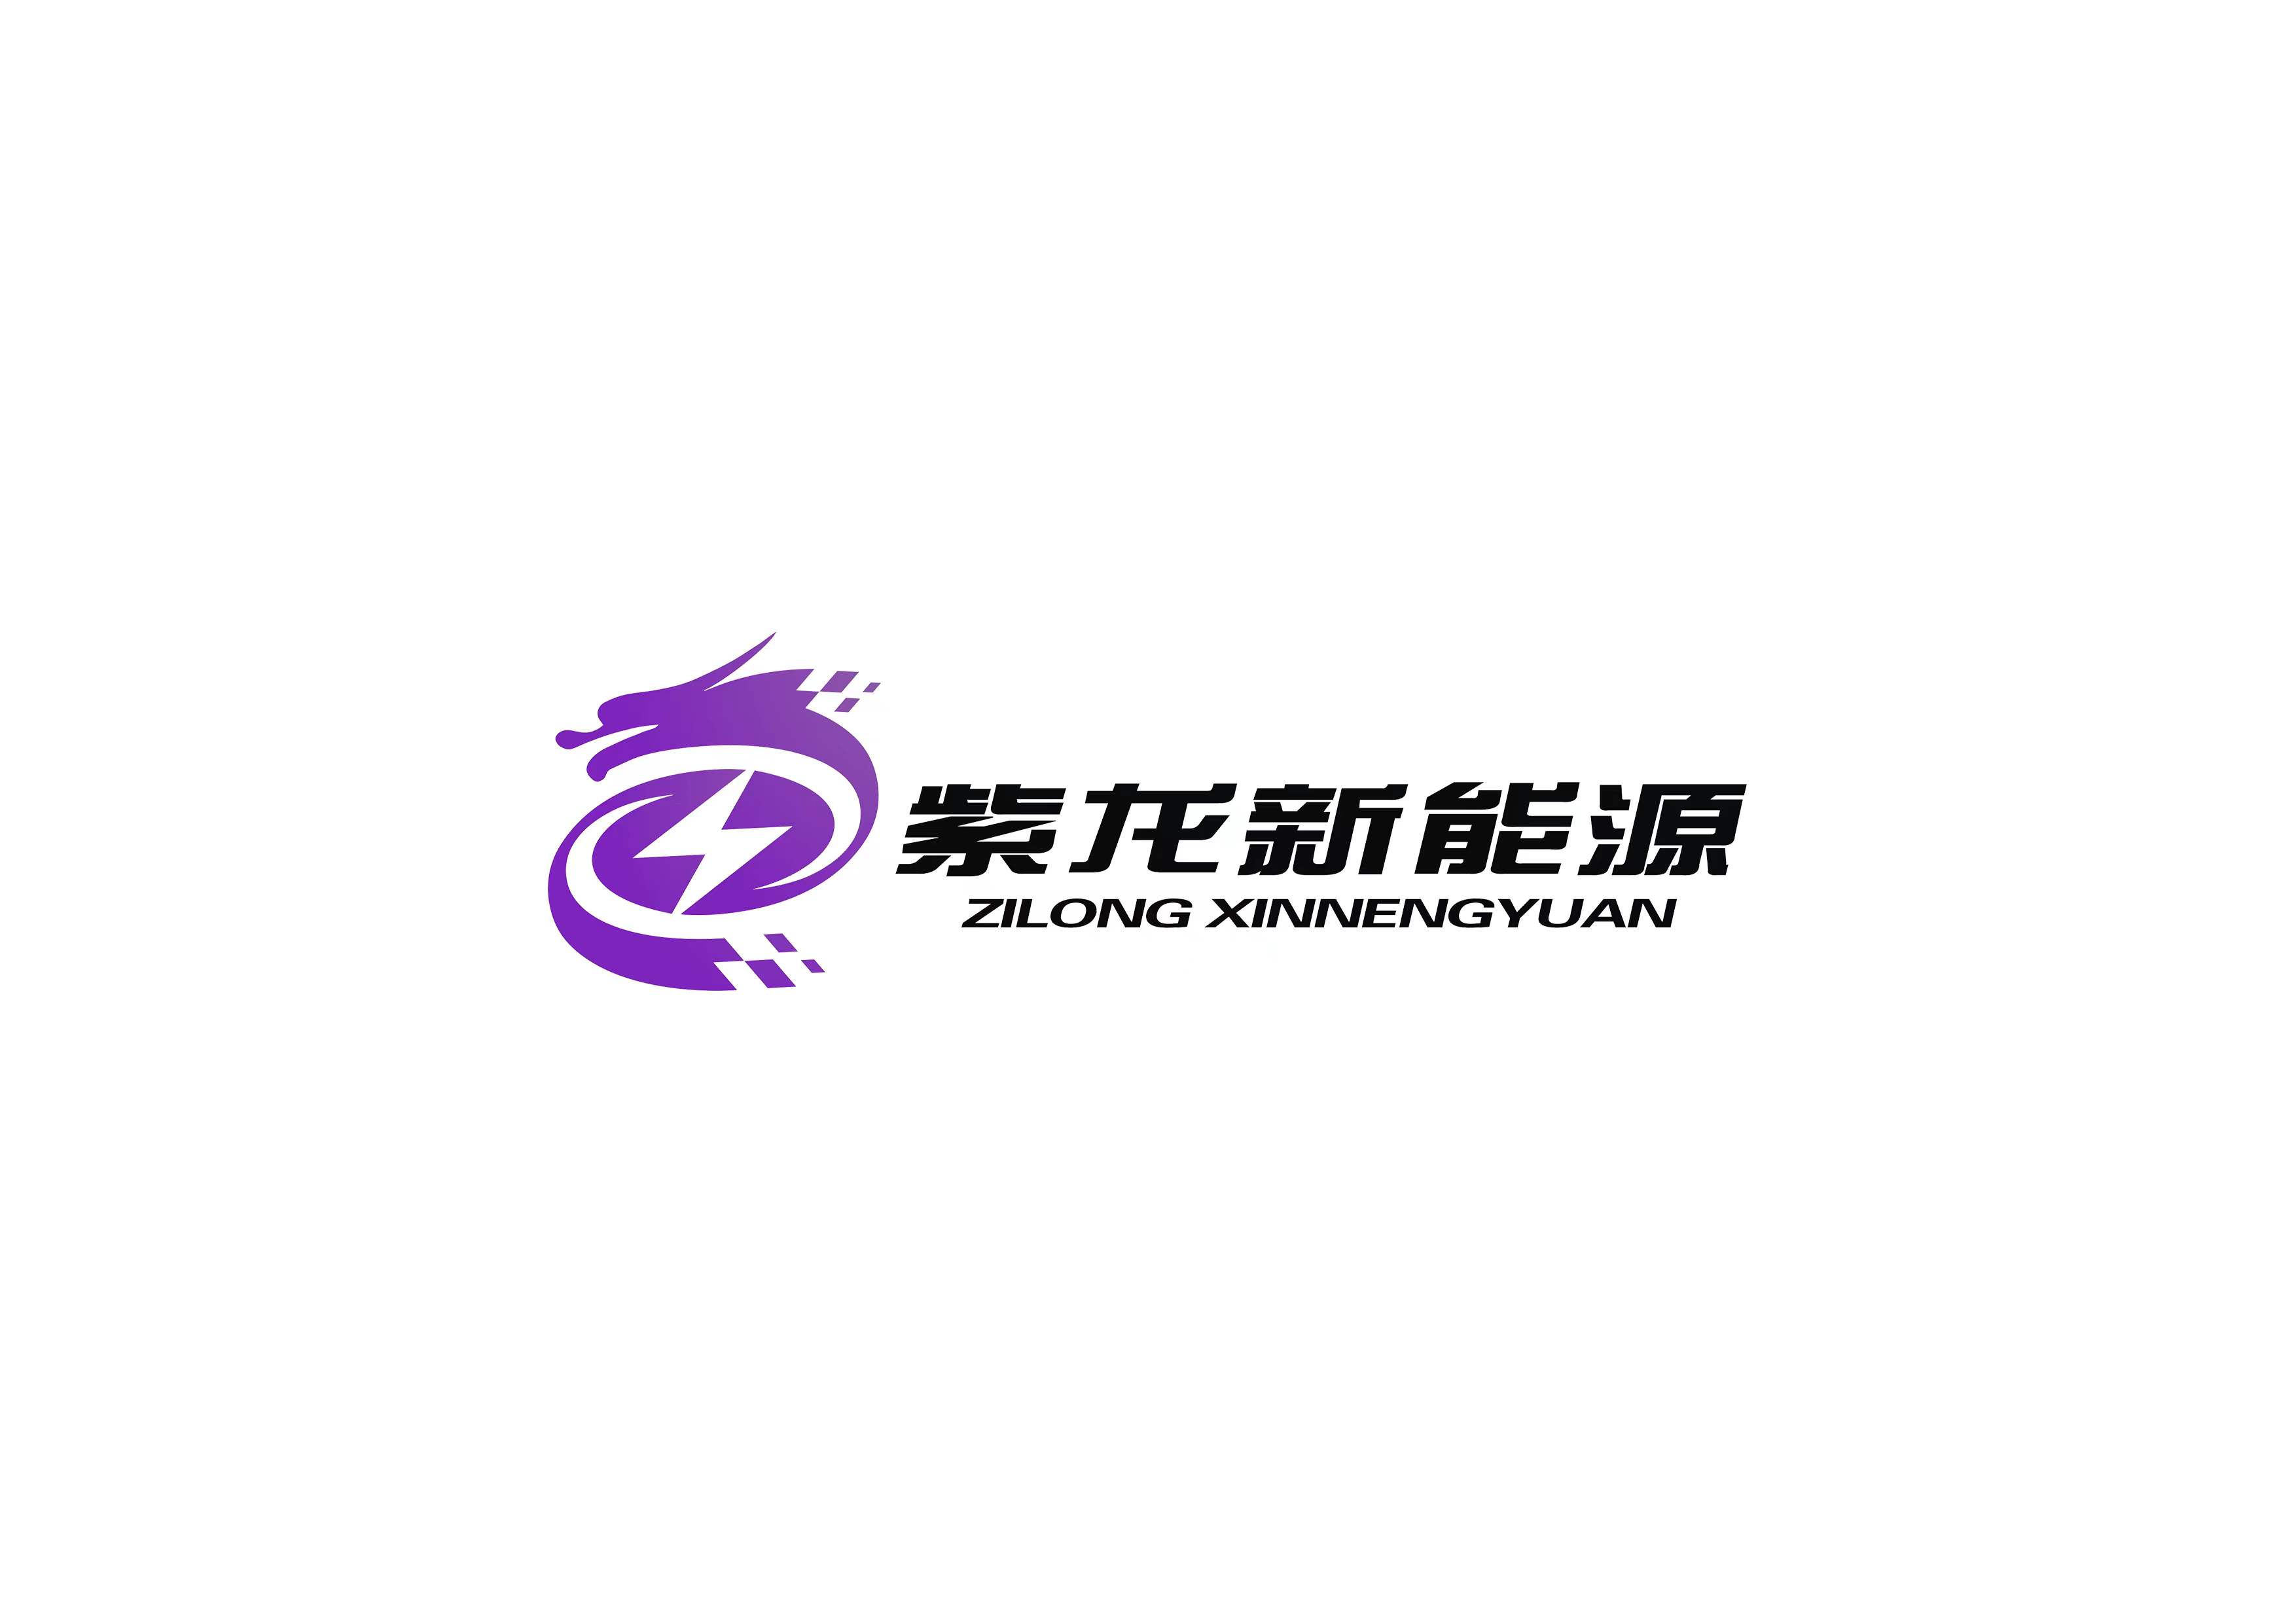 上海紫龍新能源有限公司LOGO